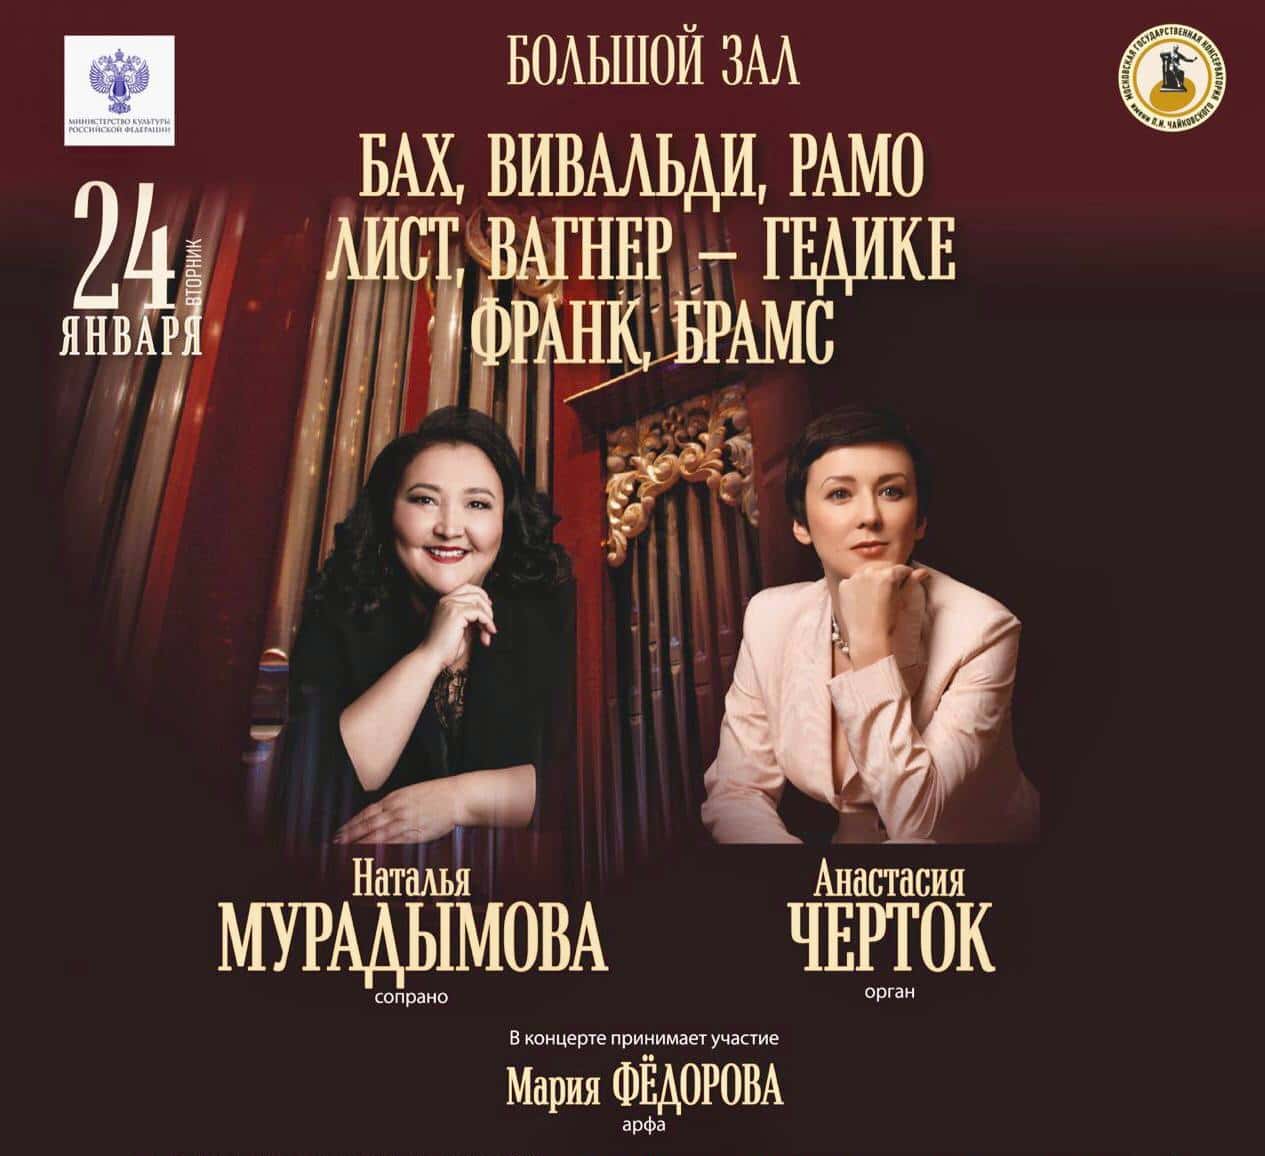 Наталья Мурадымова и Анастасия Черток выступят в Московской консерватории